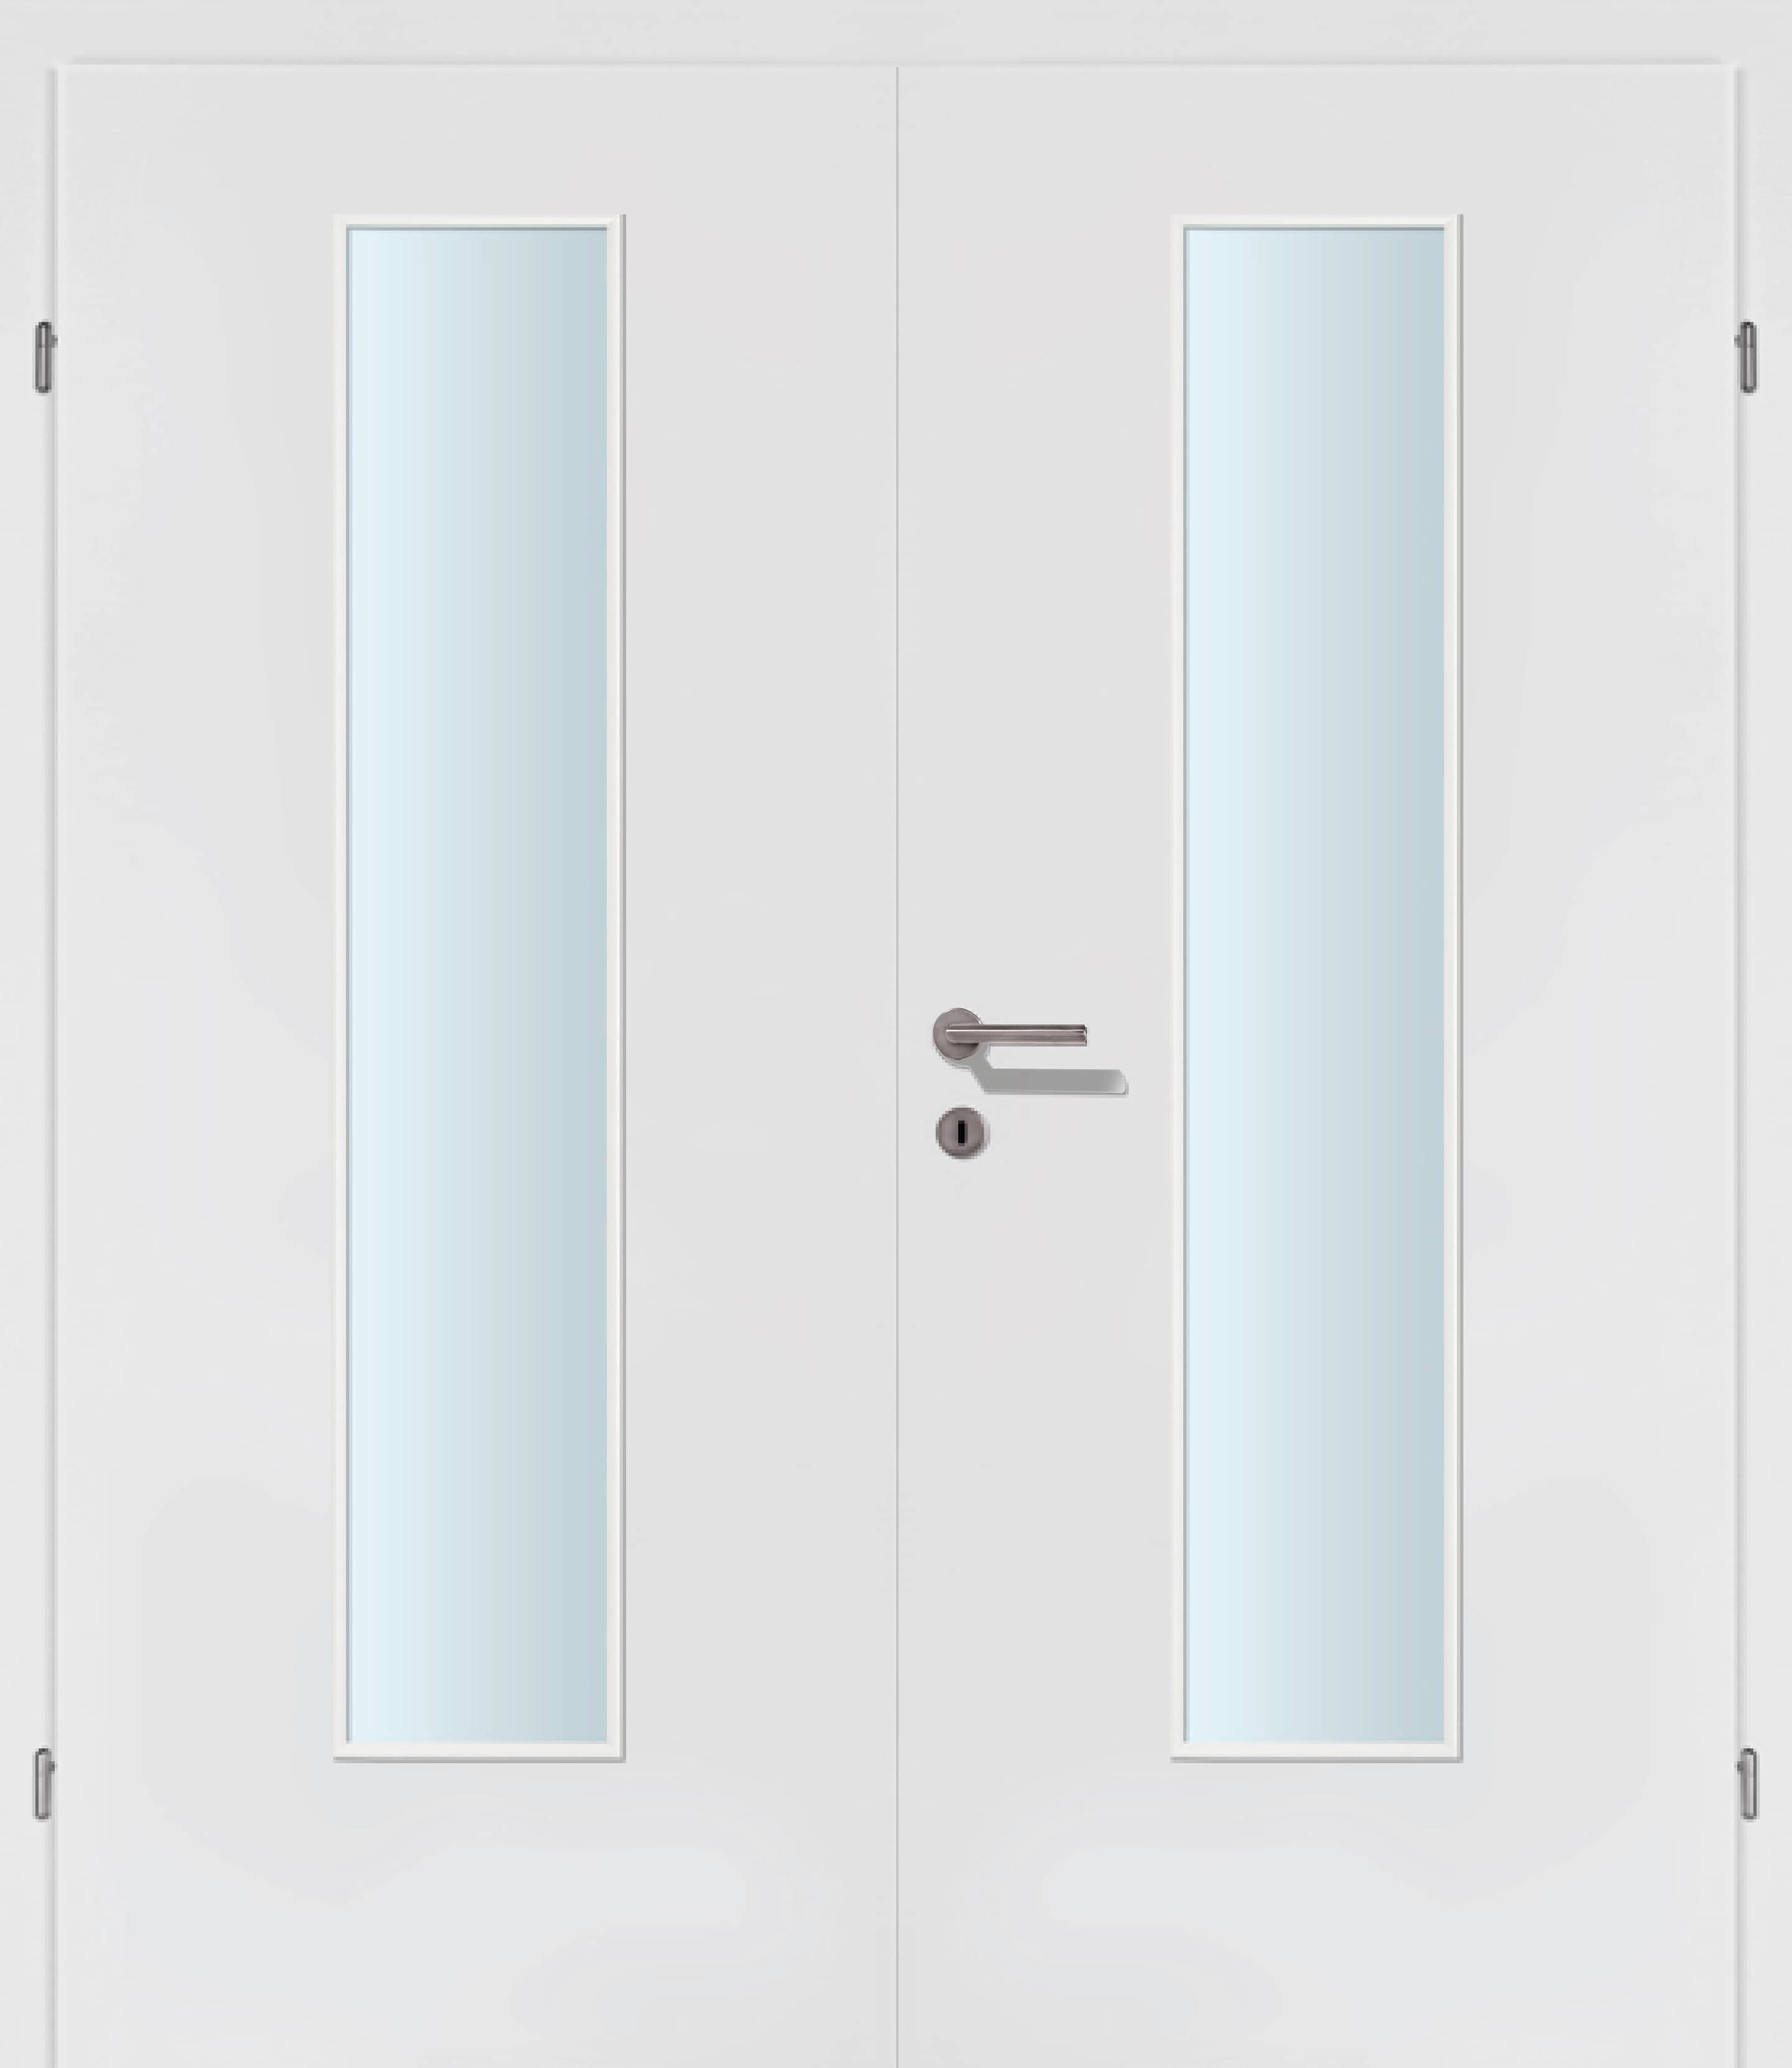 Selektion weiss Innentür Inkl. Zarge (Türrahmen) Doppeltüre Inkl. Glaslichte EN Mittig